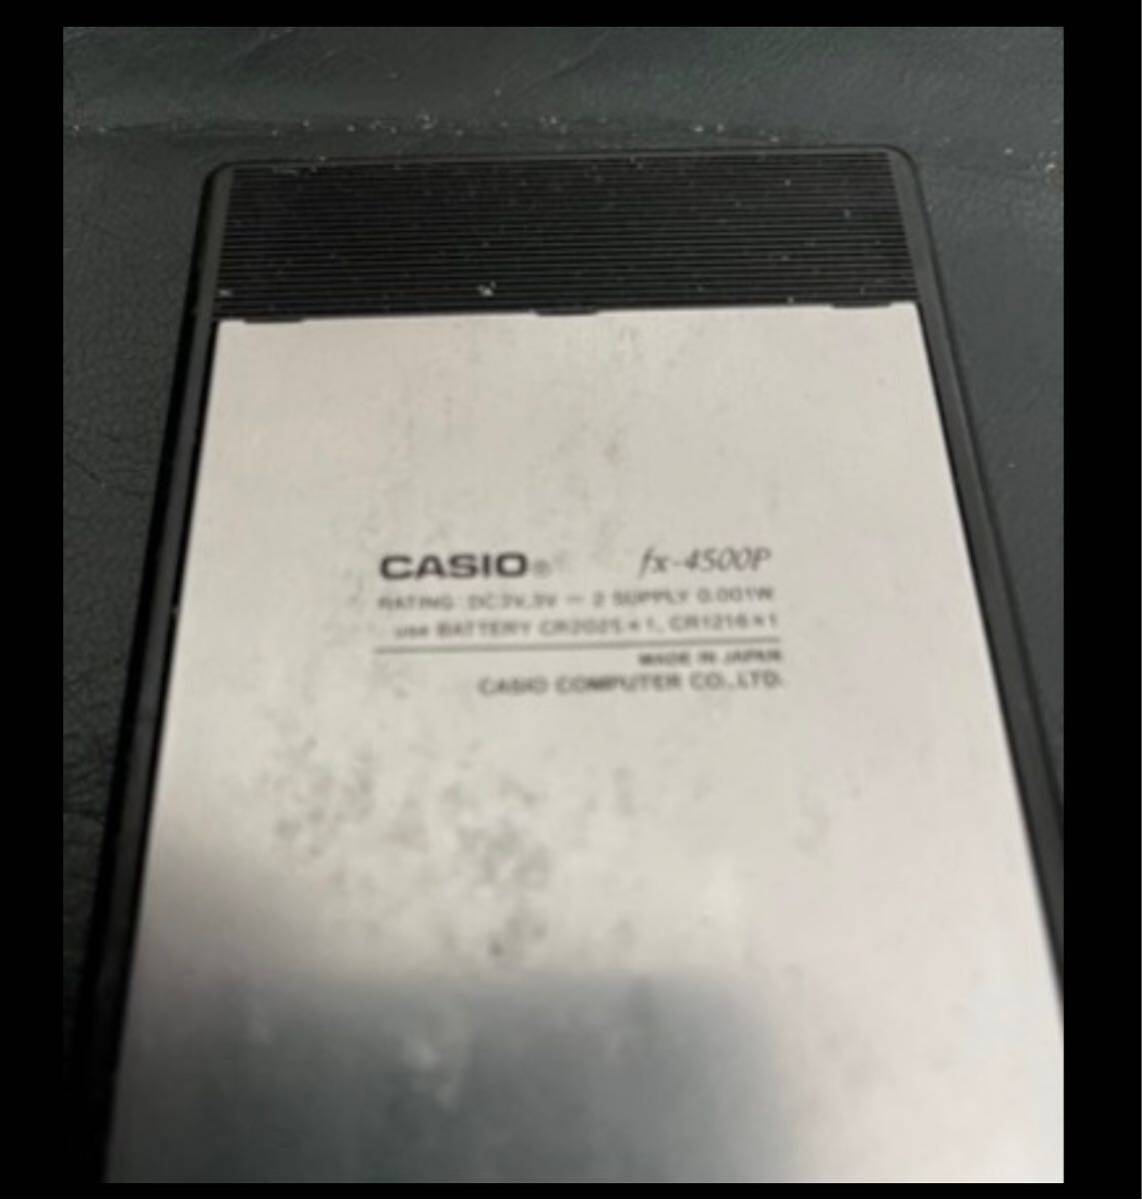 CASIO FX-4500P 関数電卓 カシオ_画像3